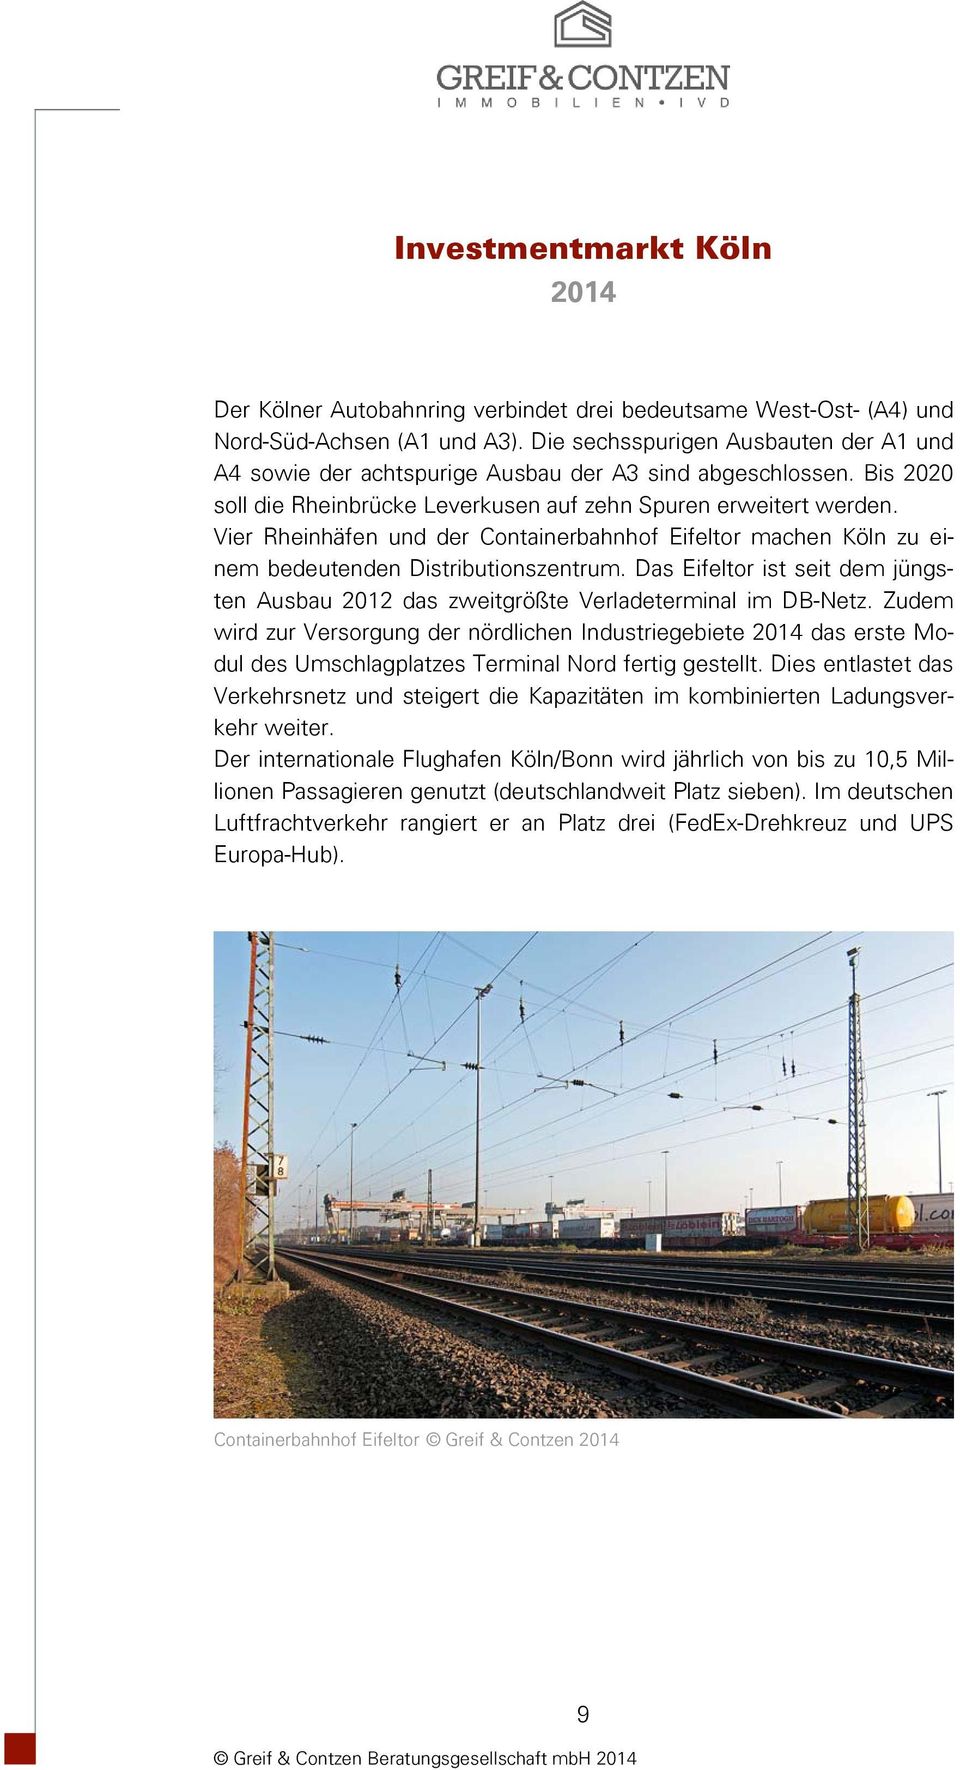 Das Eifeltor ist seit dem jüngsten Ausbau 2012 das zweitgrößte Verladeterminal im DB-Netz.